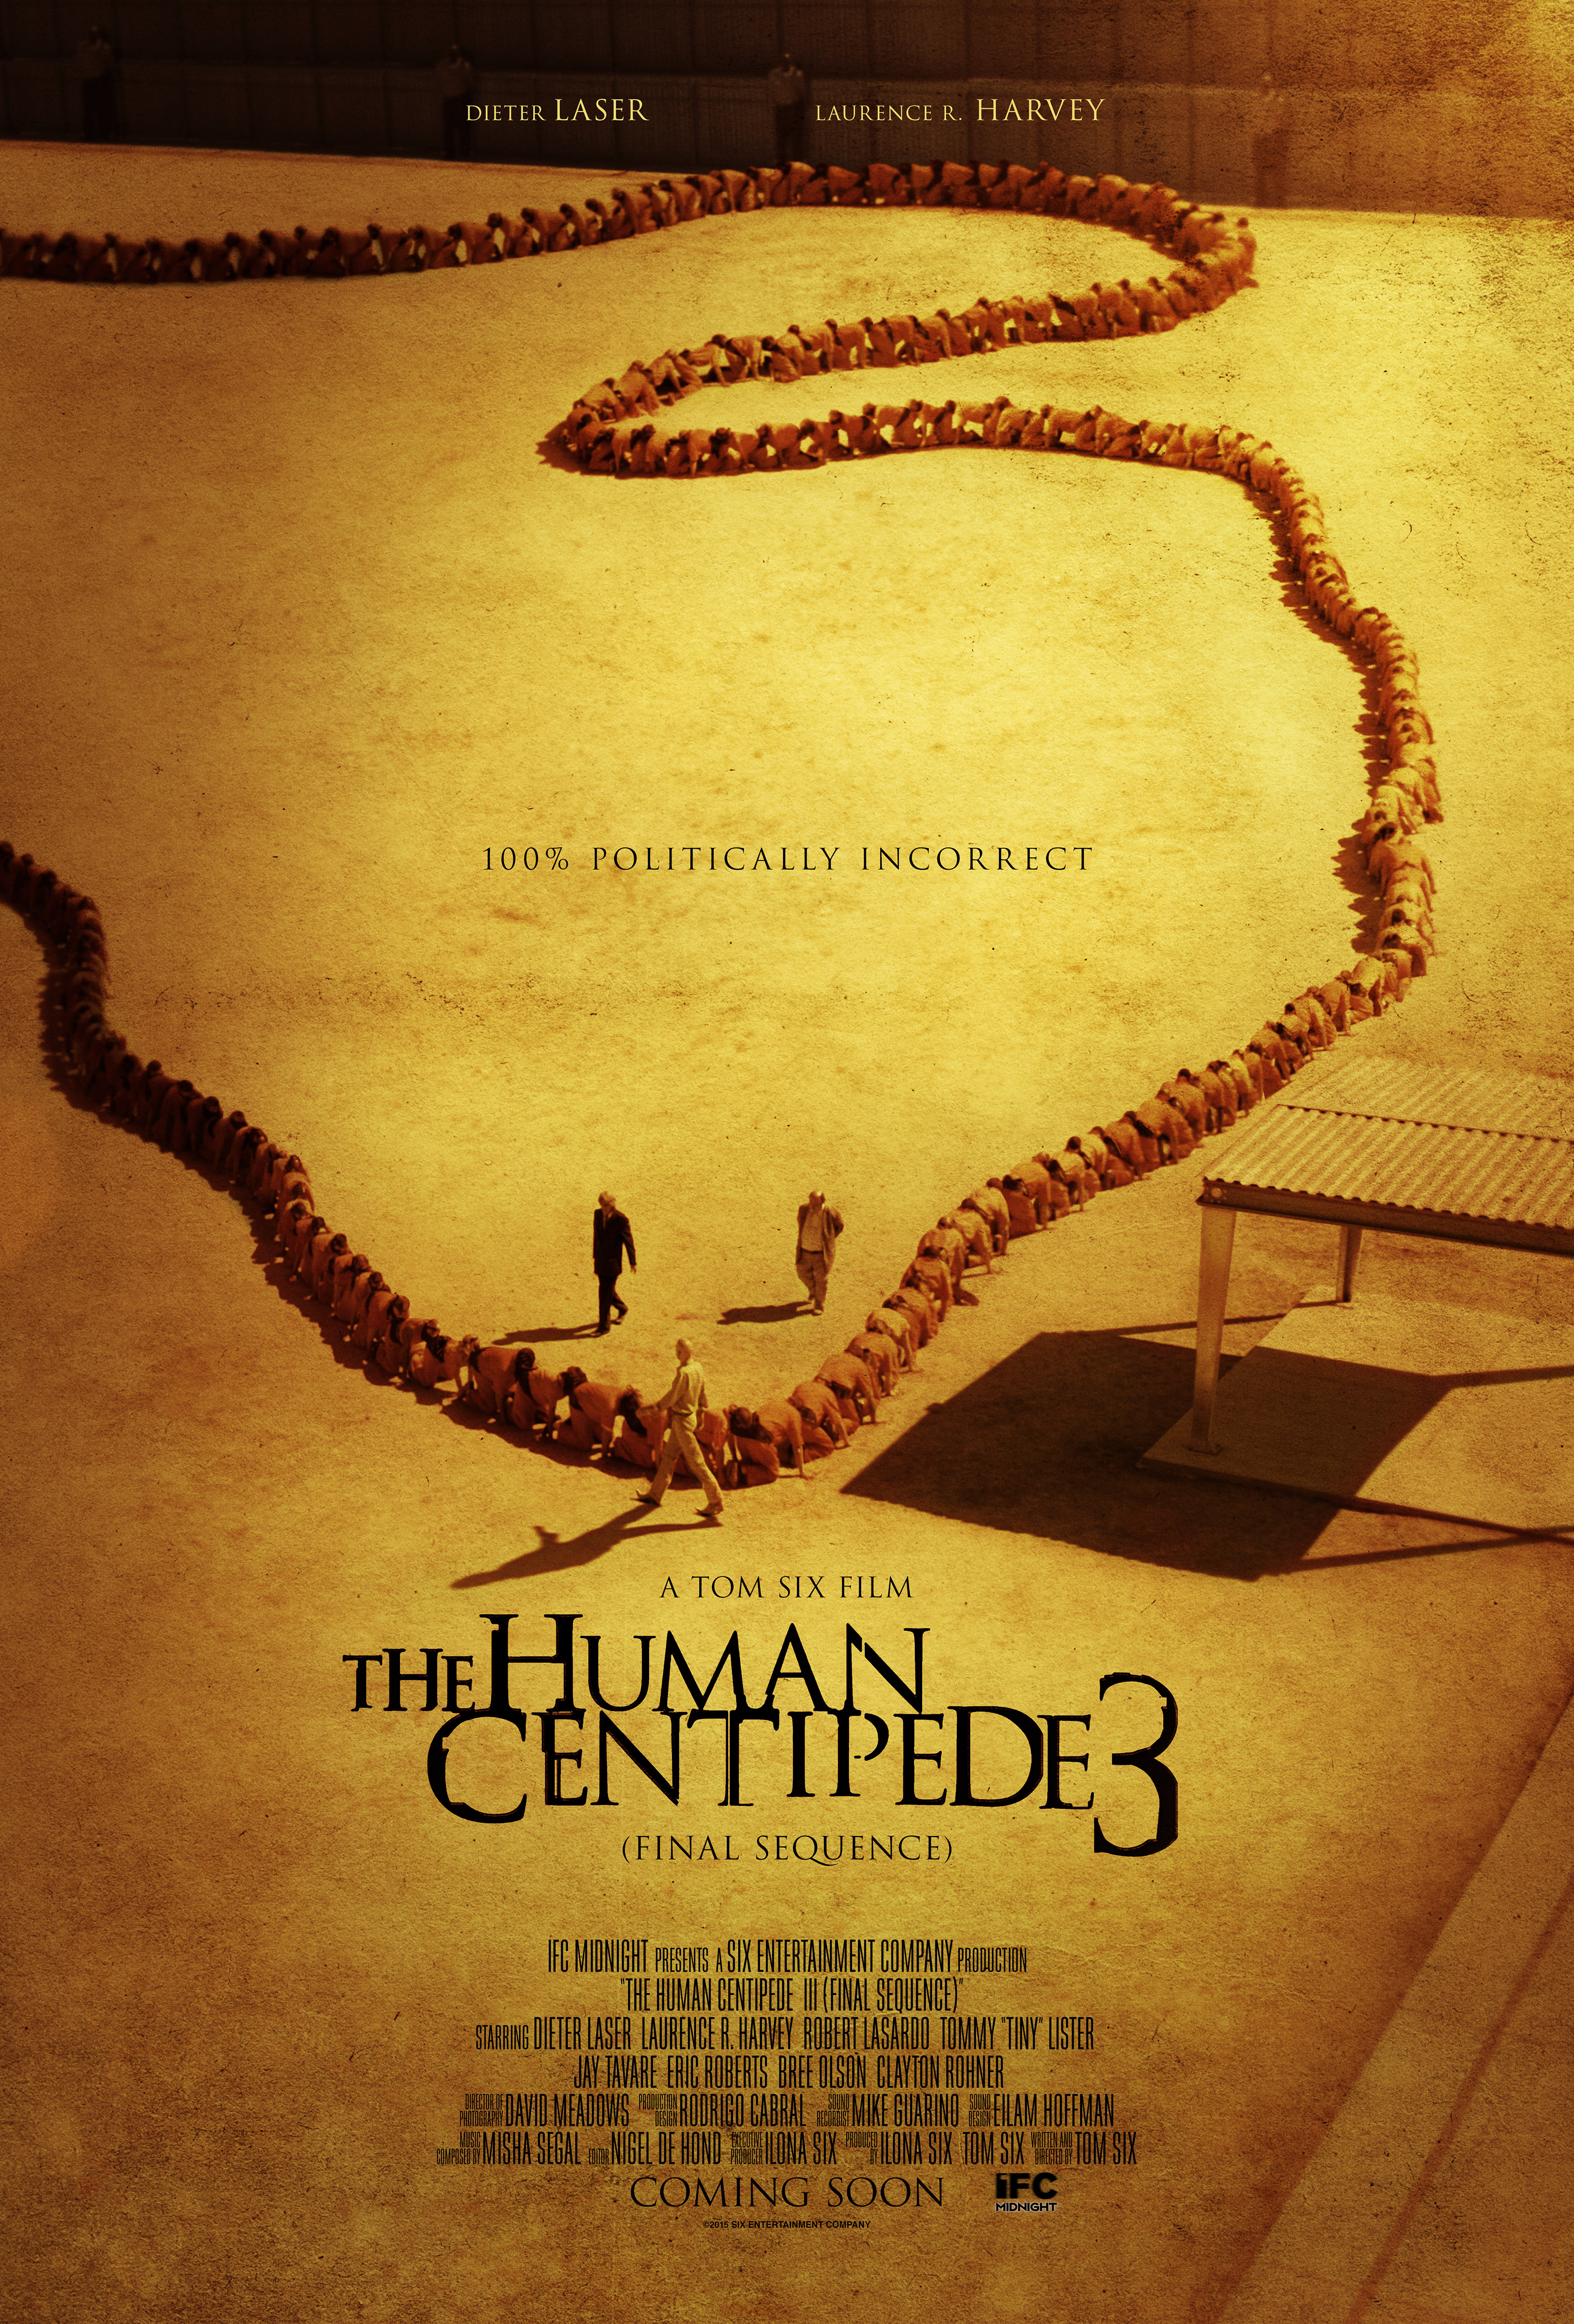 Human Centipede 3 film review: a film too far?